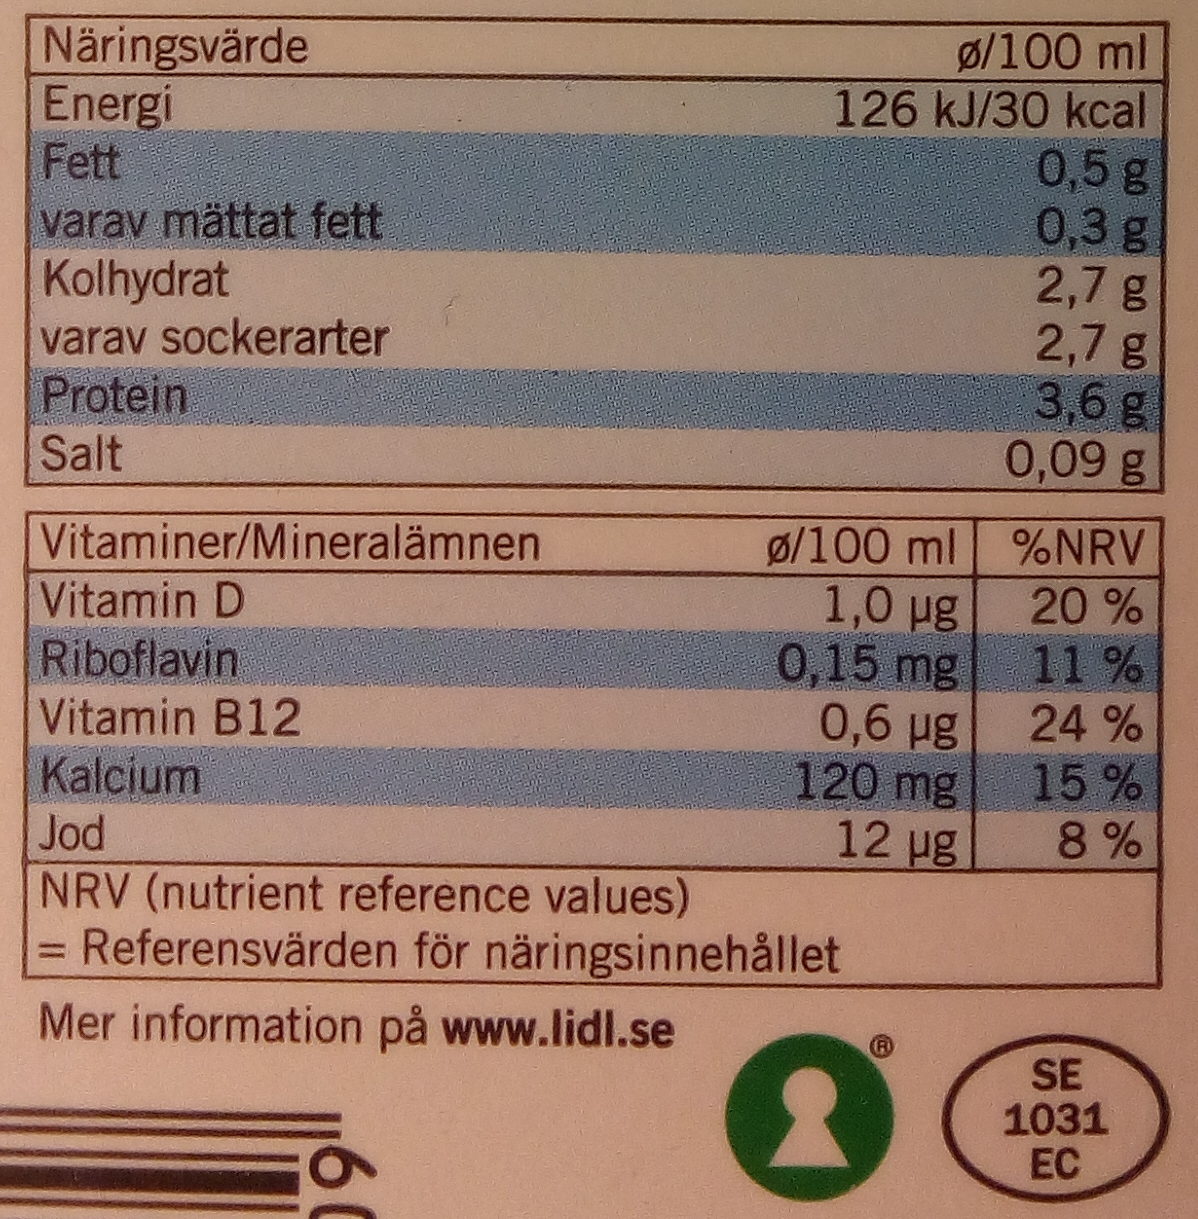 Ängens Laktosfri svensk lättmjölkdryck - Näringsfakta